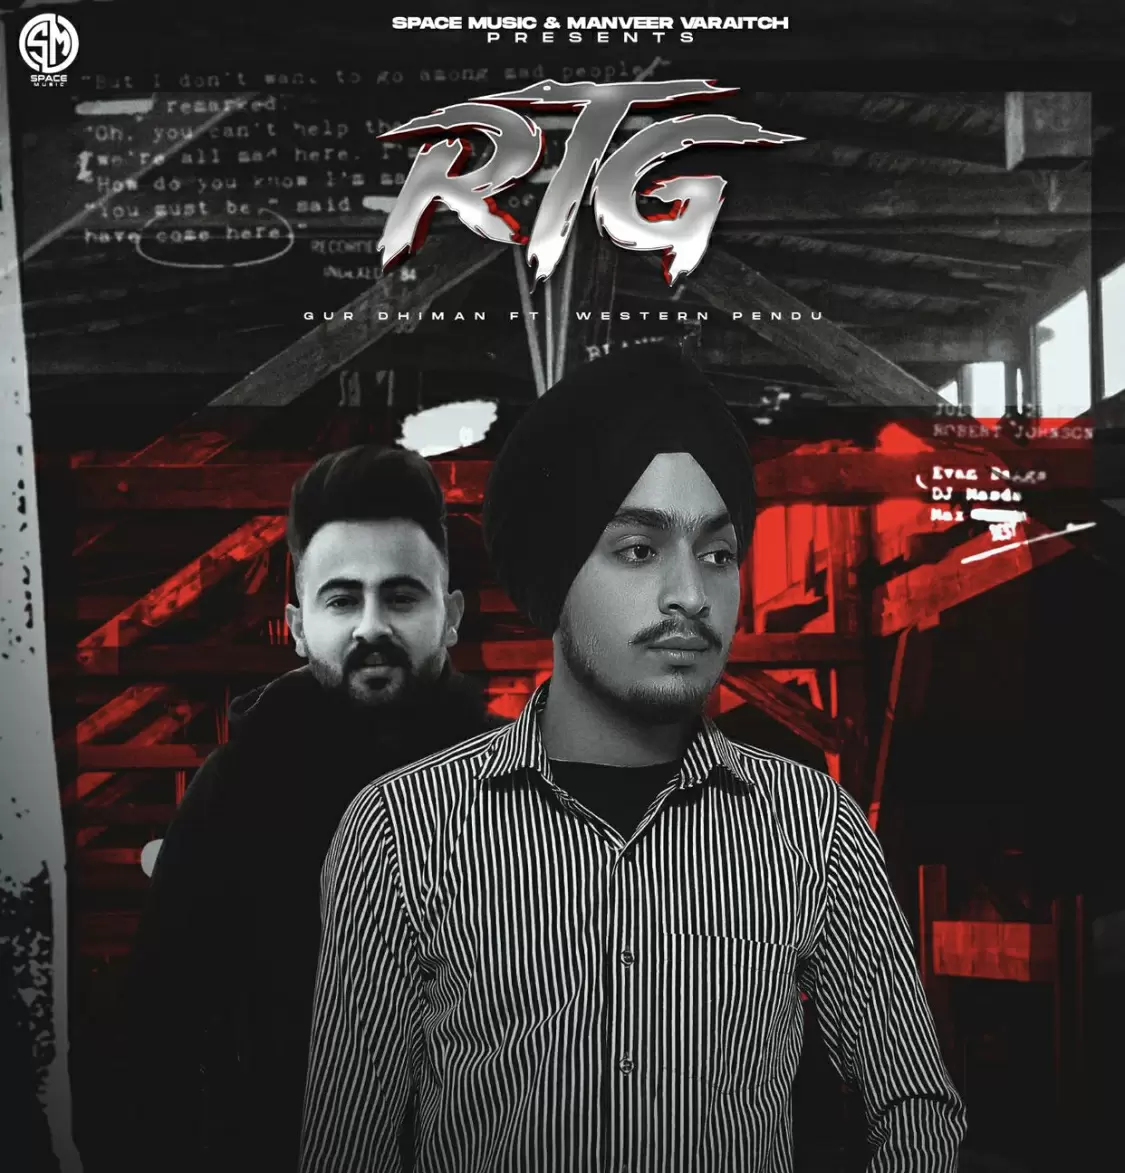 RTG (Refer To God) Gur Dhiman Mp3 Download Song - Mr-Punjab